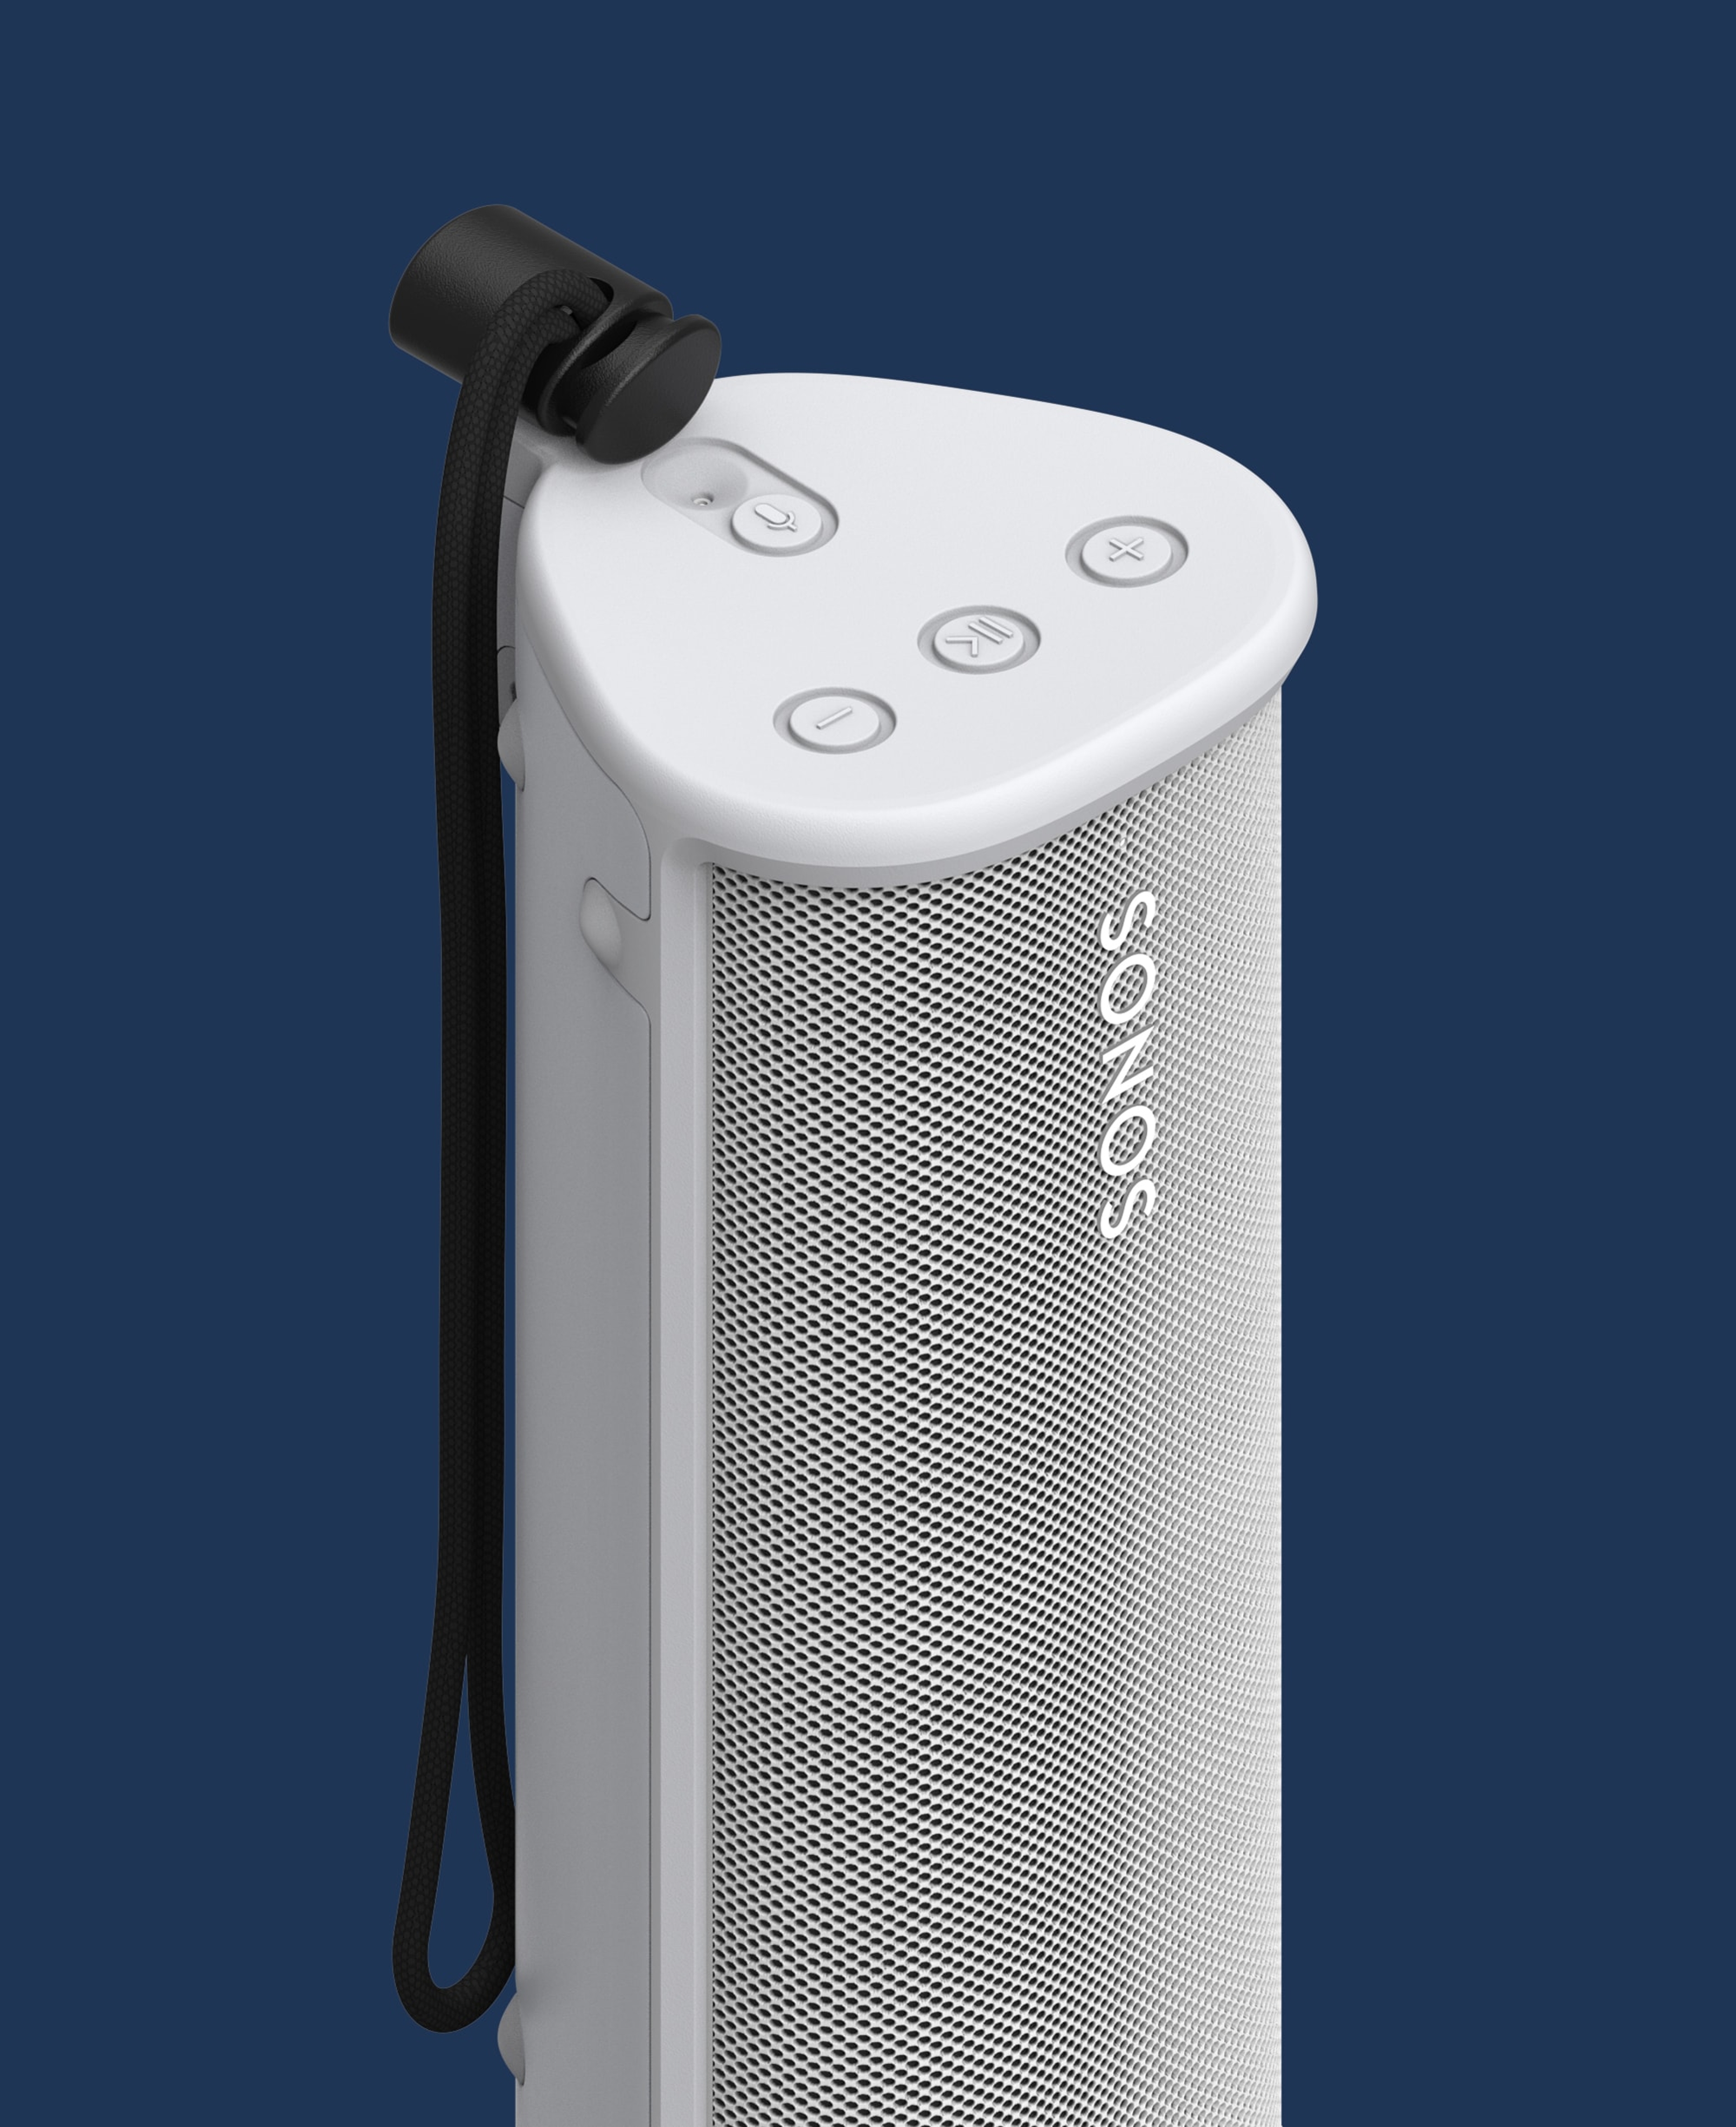 Immagine di Sonos Roam bianco nella custodia OtterBox per Sonos Roam bianca su sfondo blu